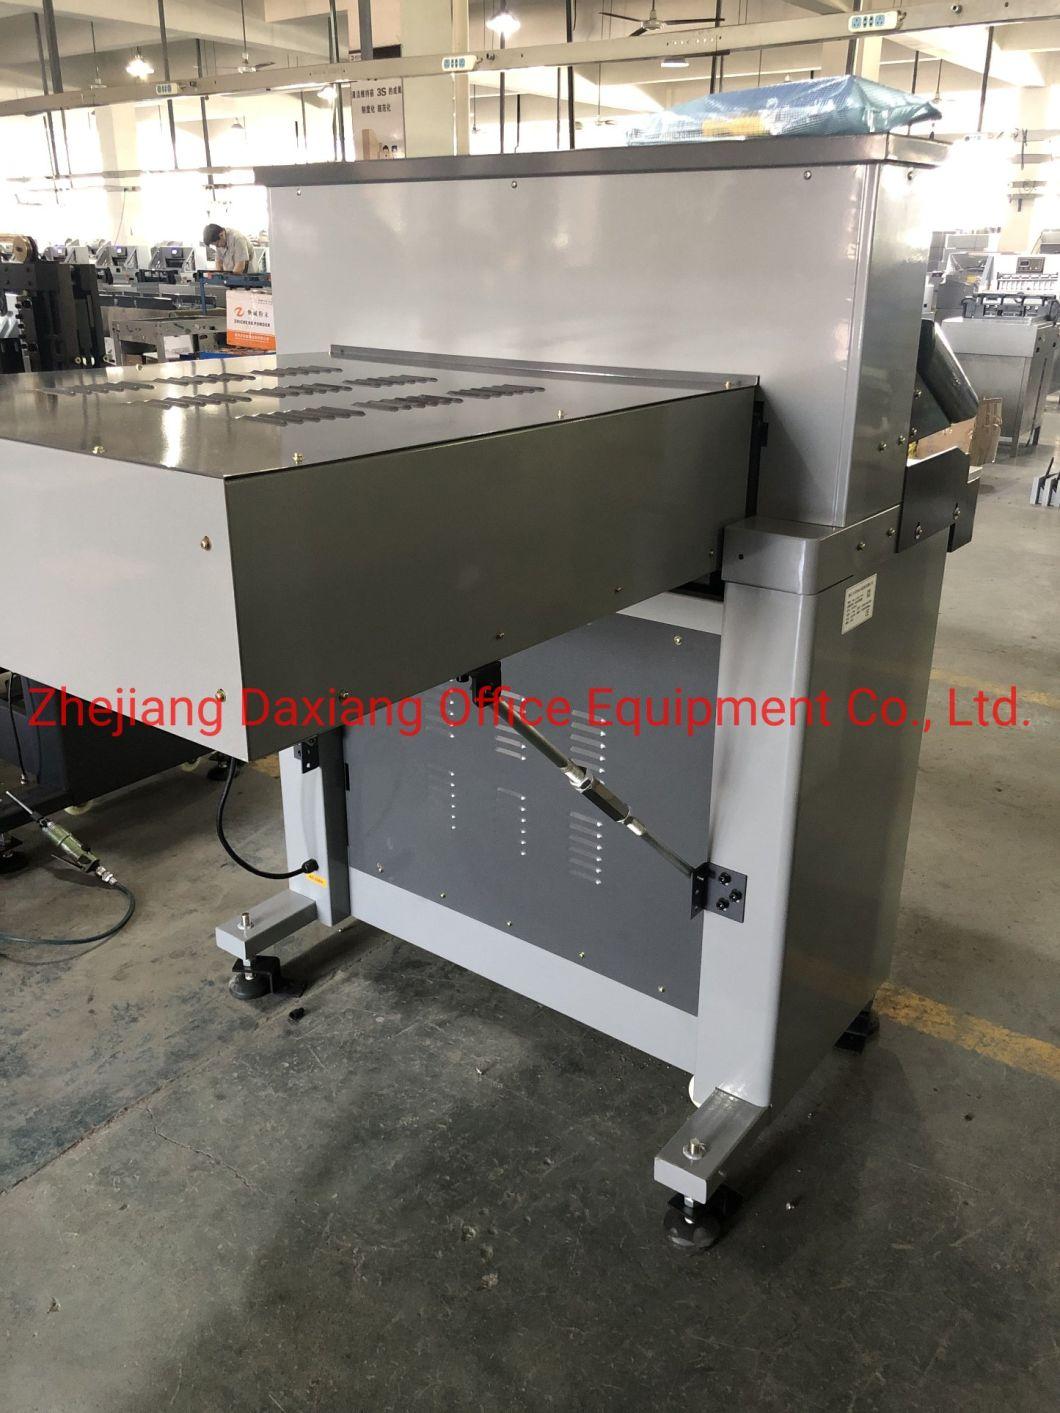 2020 New Model Hydraulic Paper Cutting Machine Guillotine Paper Cutter H520TV7